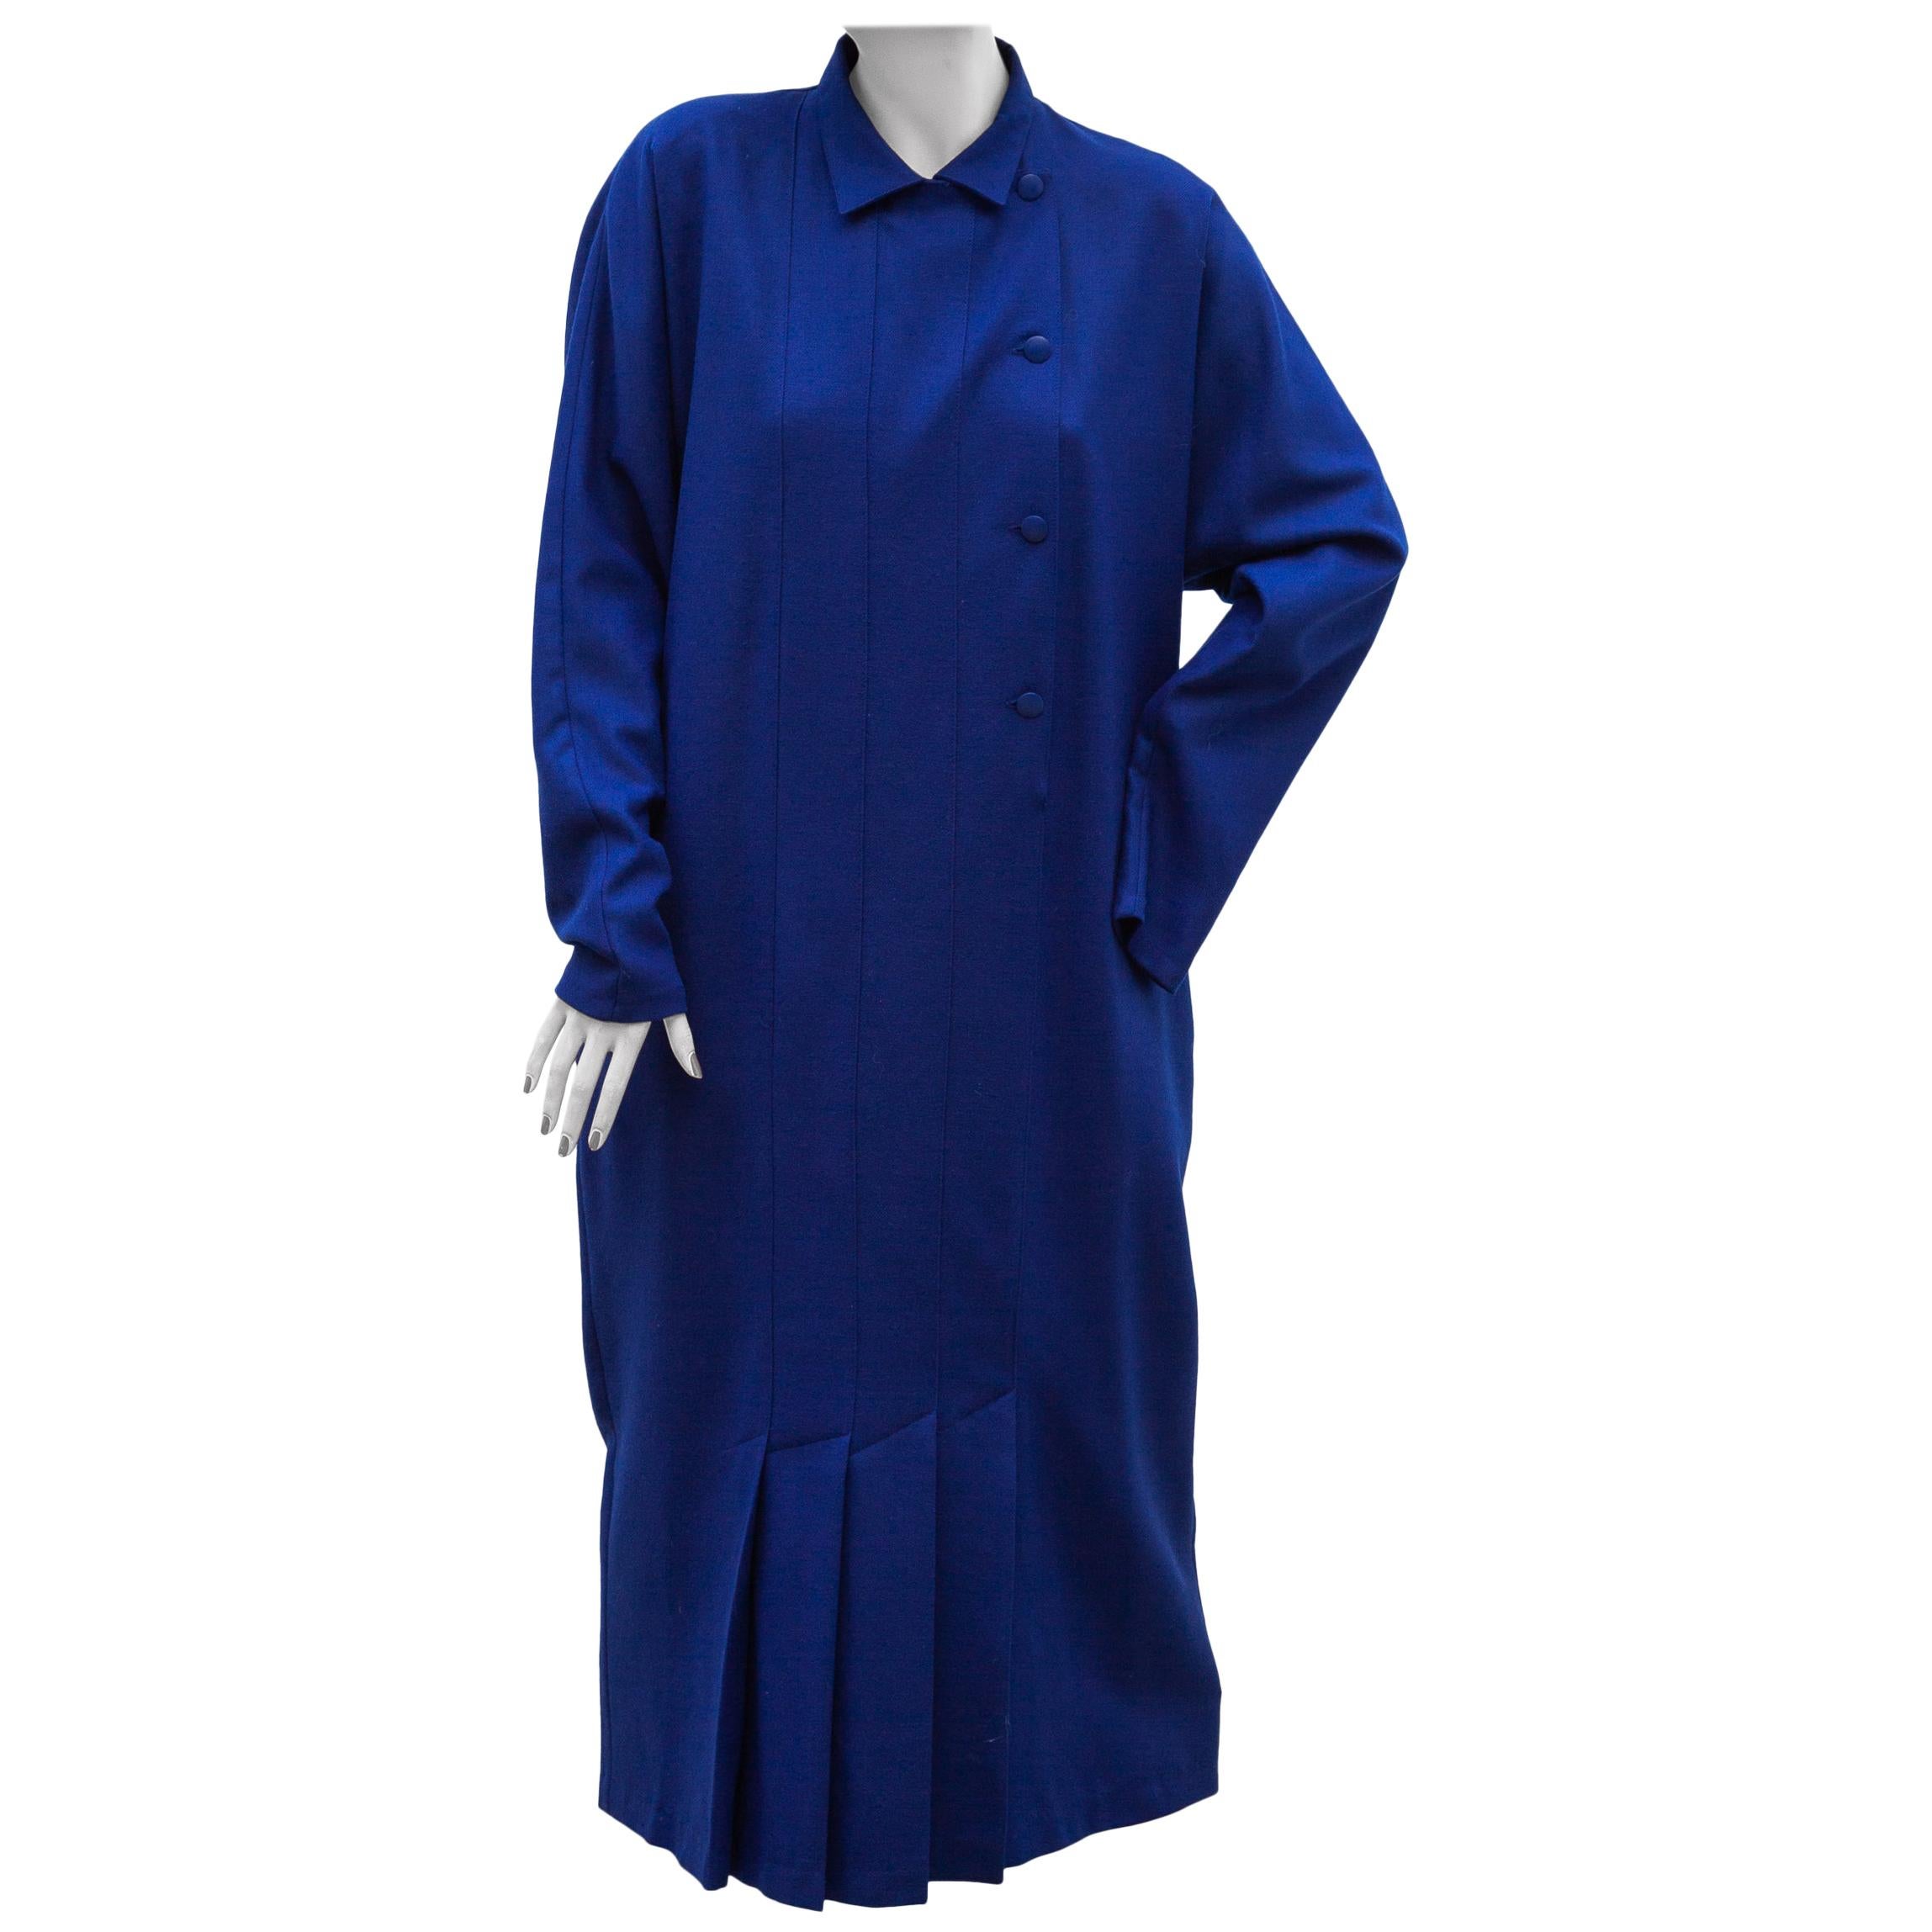 Blue Coat Dress designed by Hesselhoj, Denmark For Sale